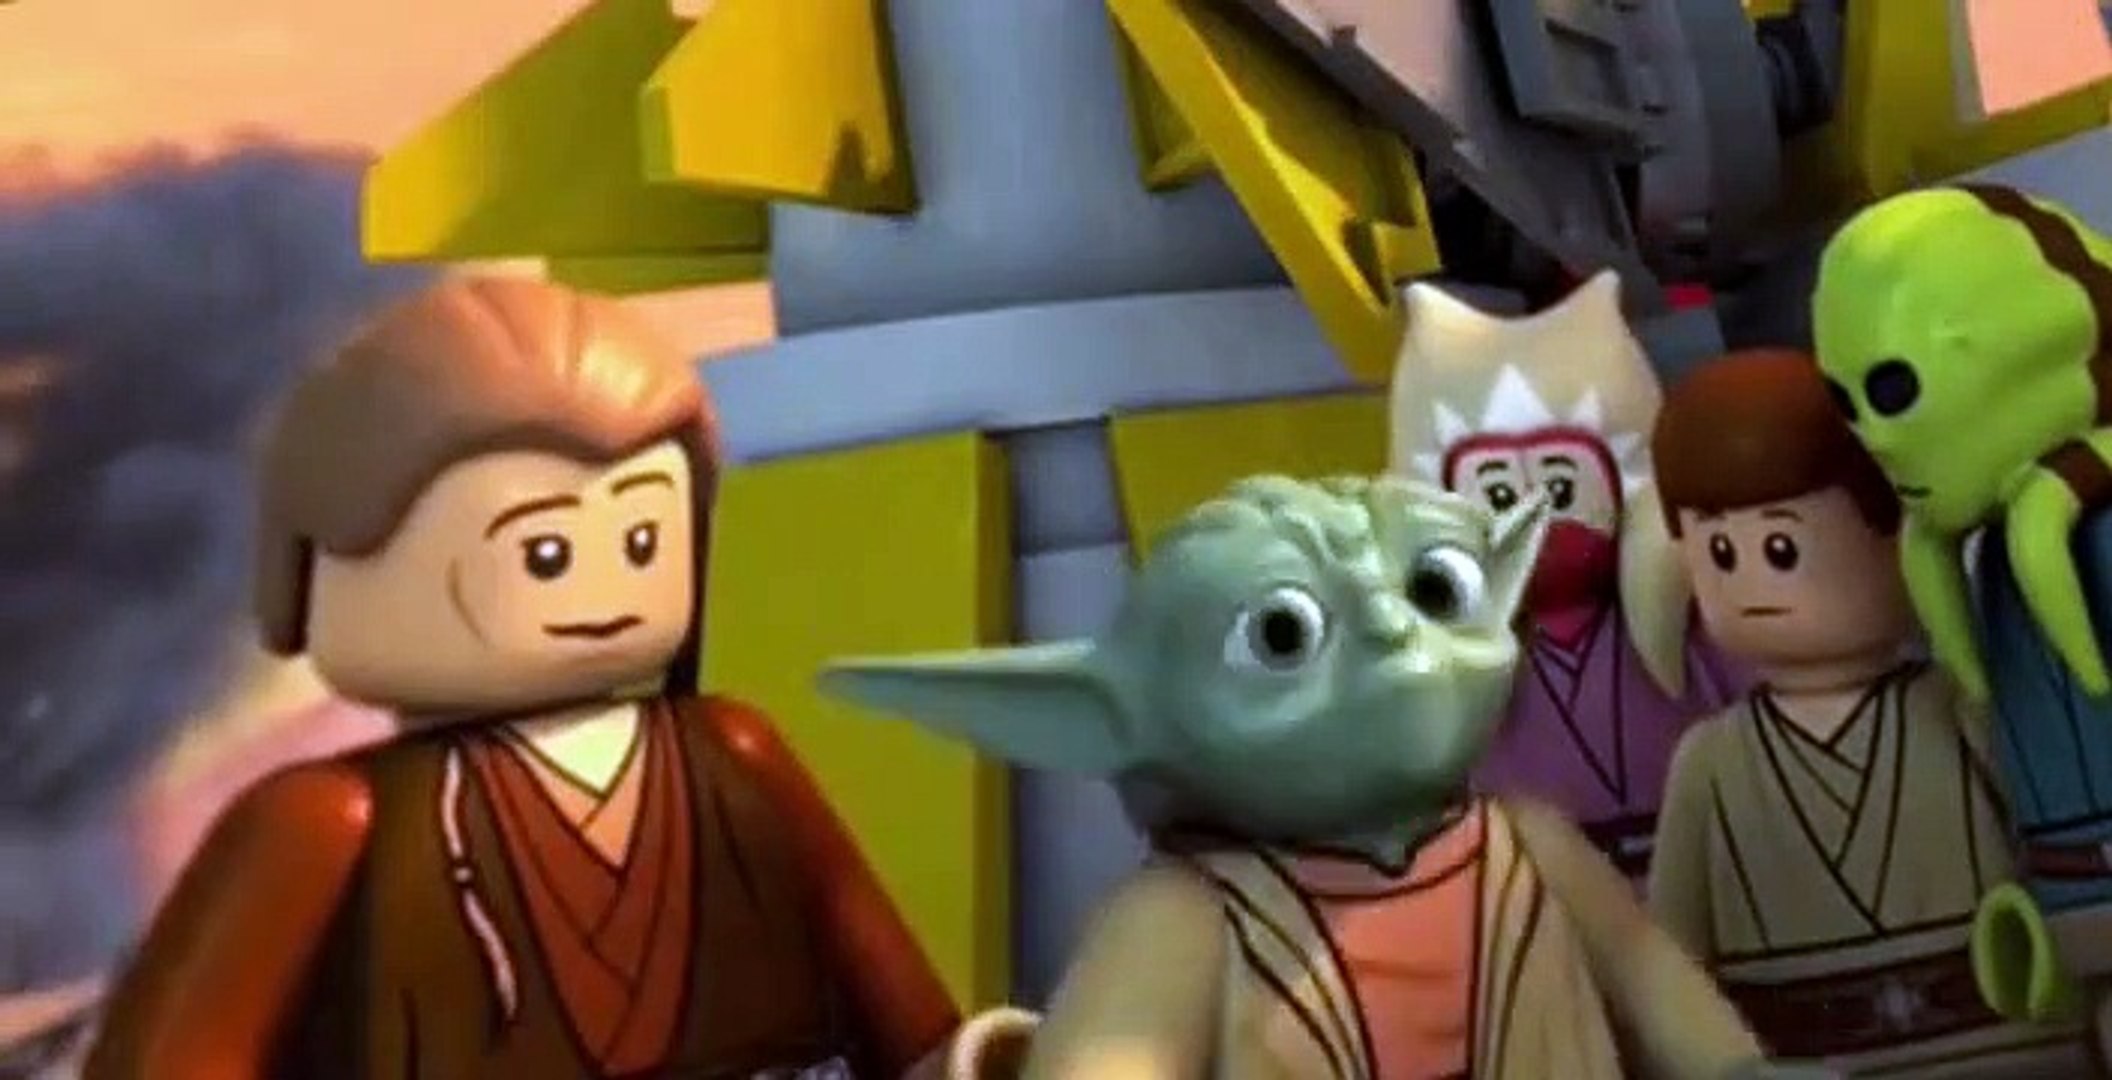 Lego Star Wars: The Yoda Chronicles Lego Star Wars: The Yoda Chronicles  E003 Attack of the Jedi